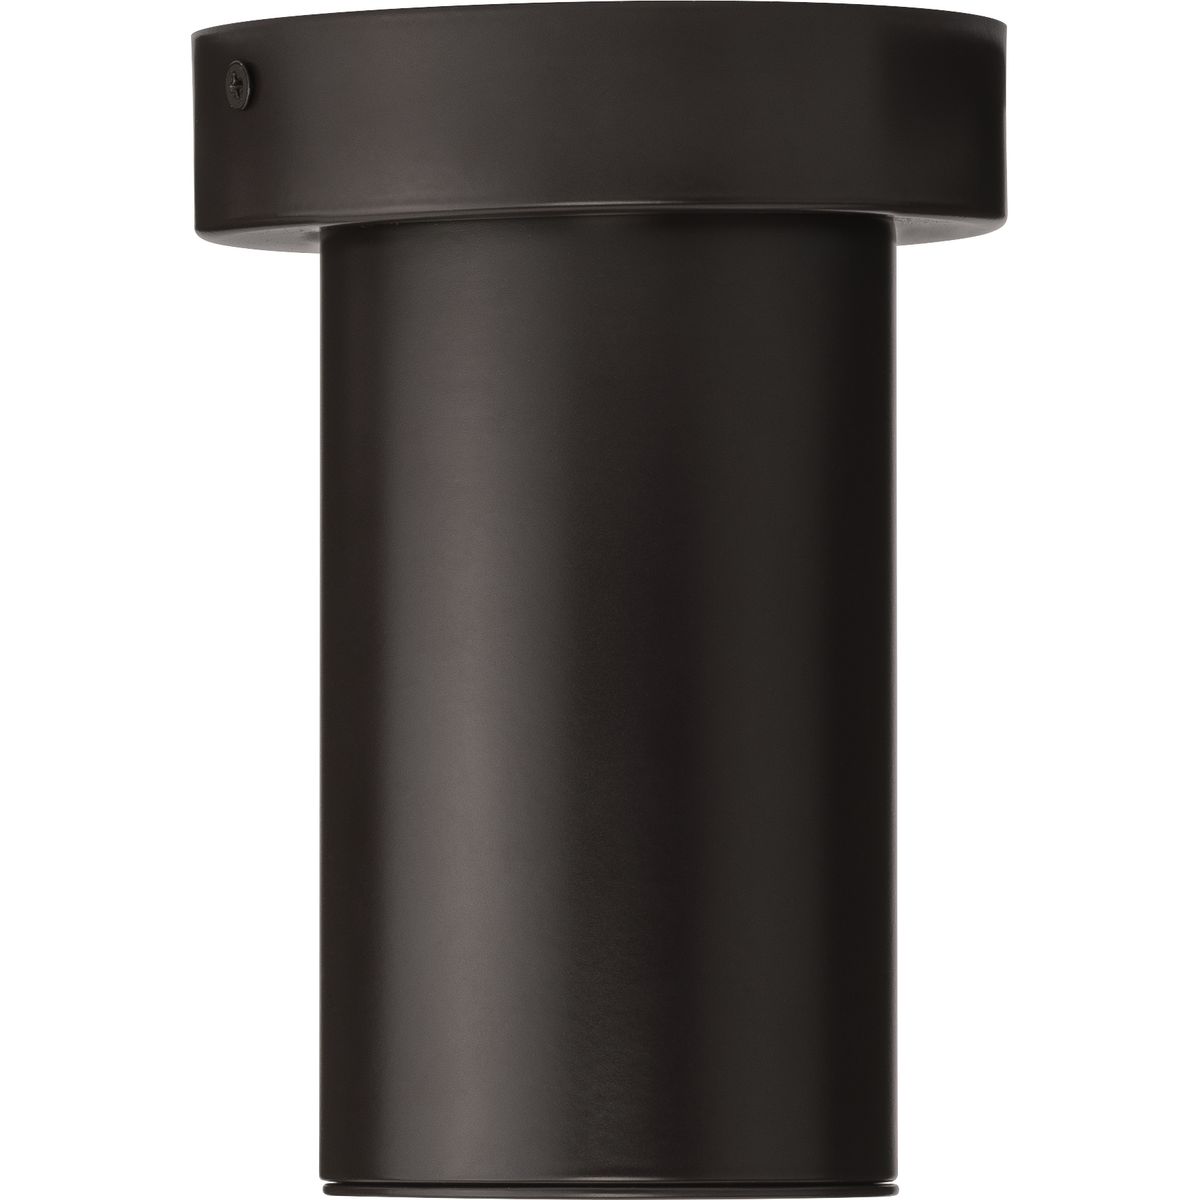 3" Antique Bronze Surface Mount Modern Adjustable LED Cylinder - Damp Location Listed